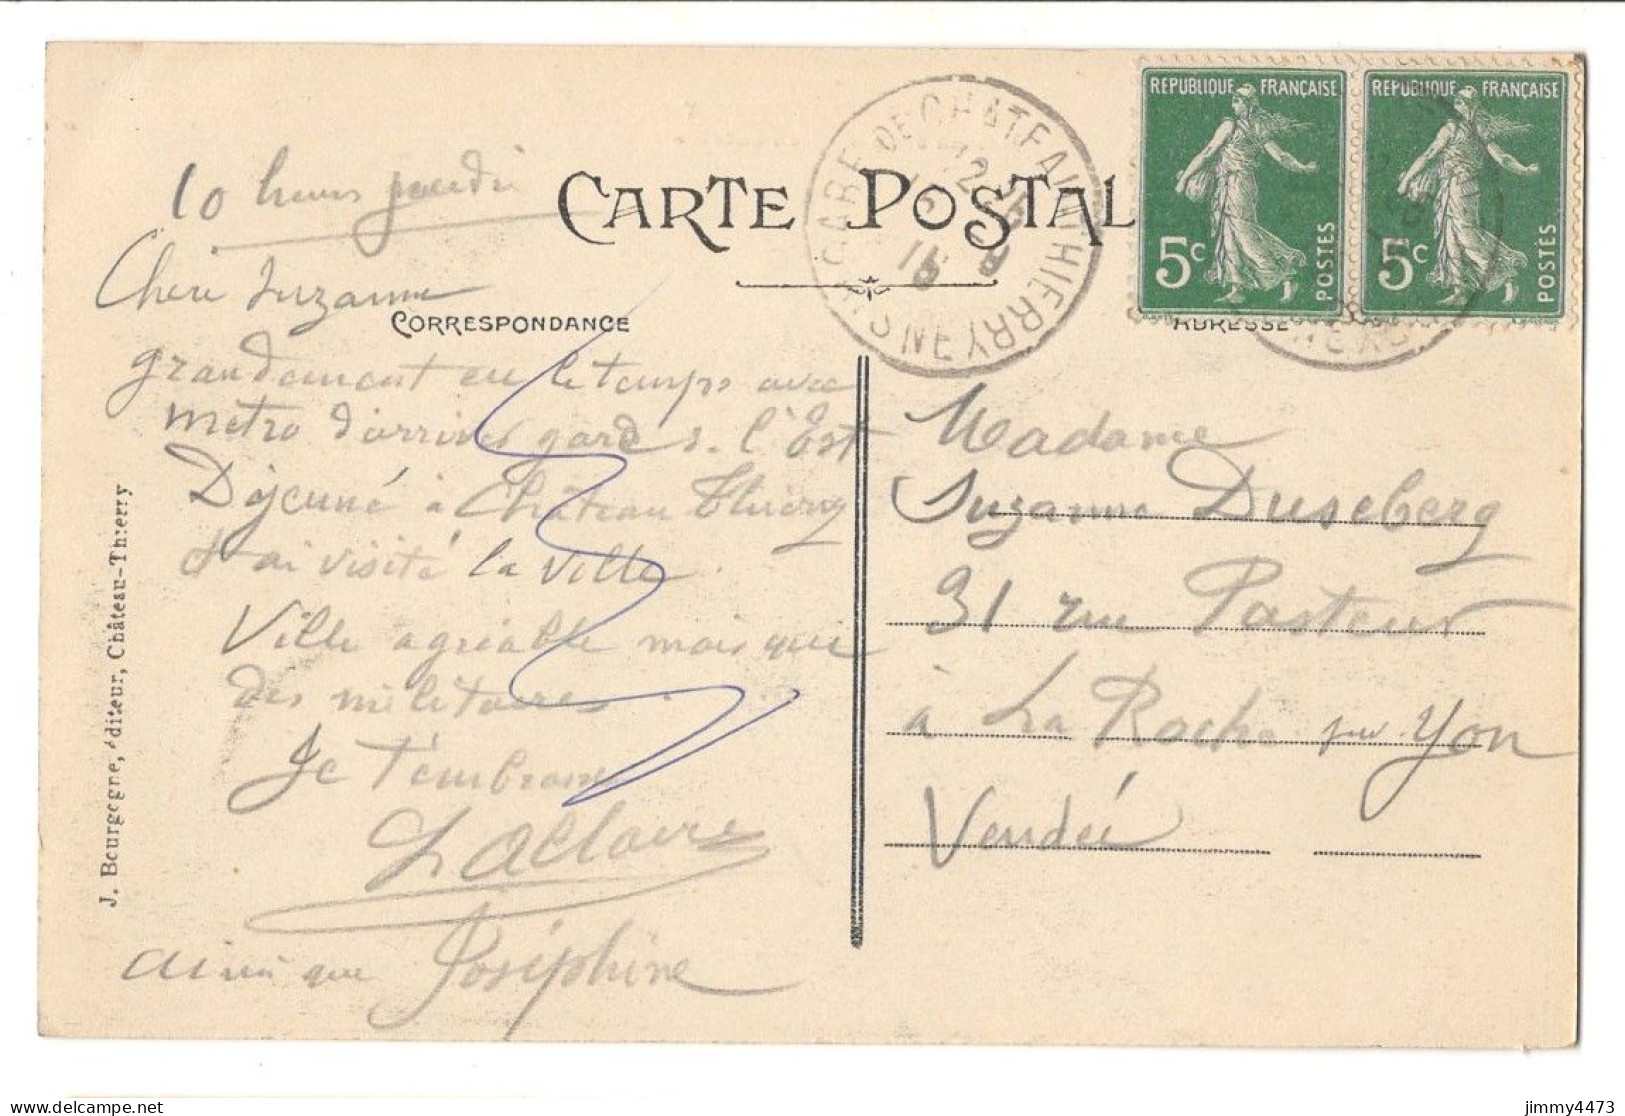 CPA - CHATEAU-THIERRY En 1915 - Maison Jean De La Fontaine - N° 8 - Edit. J. Bourgogne - Chateau Thierry